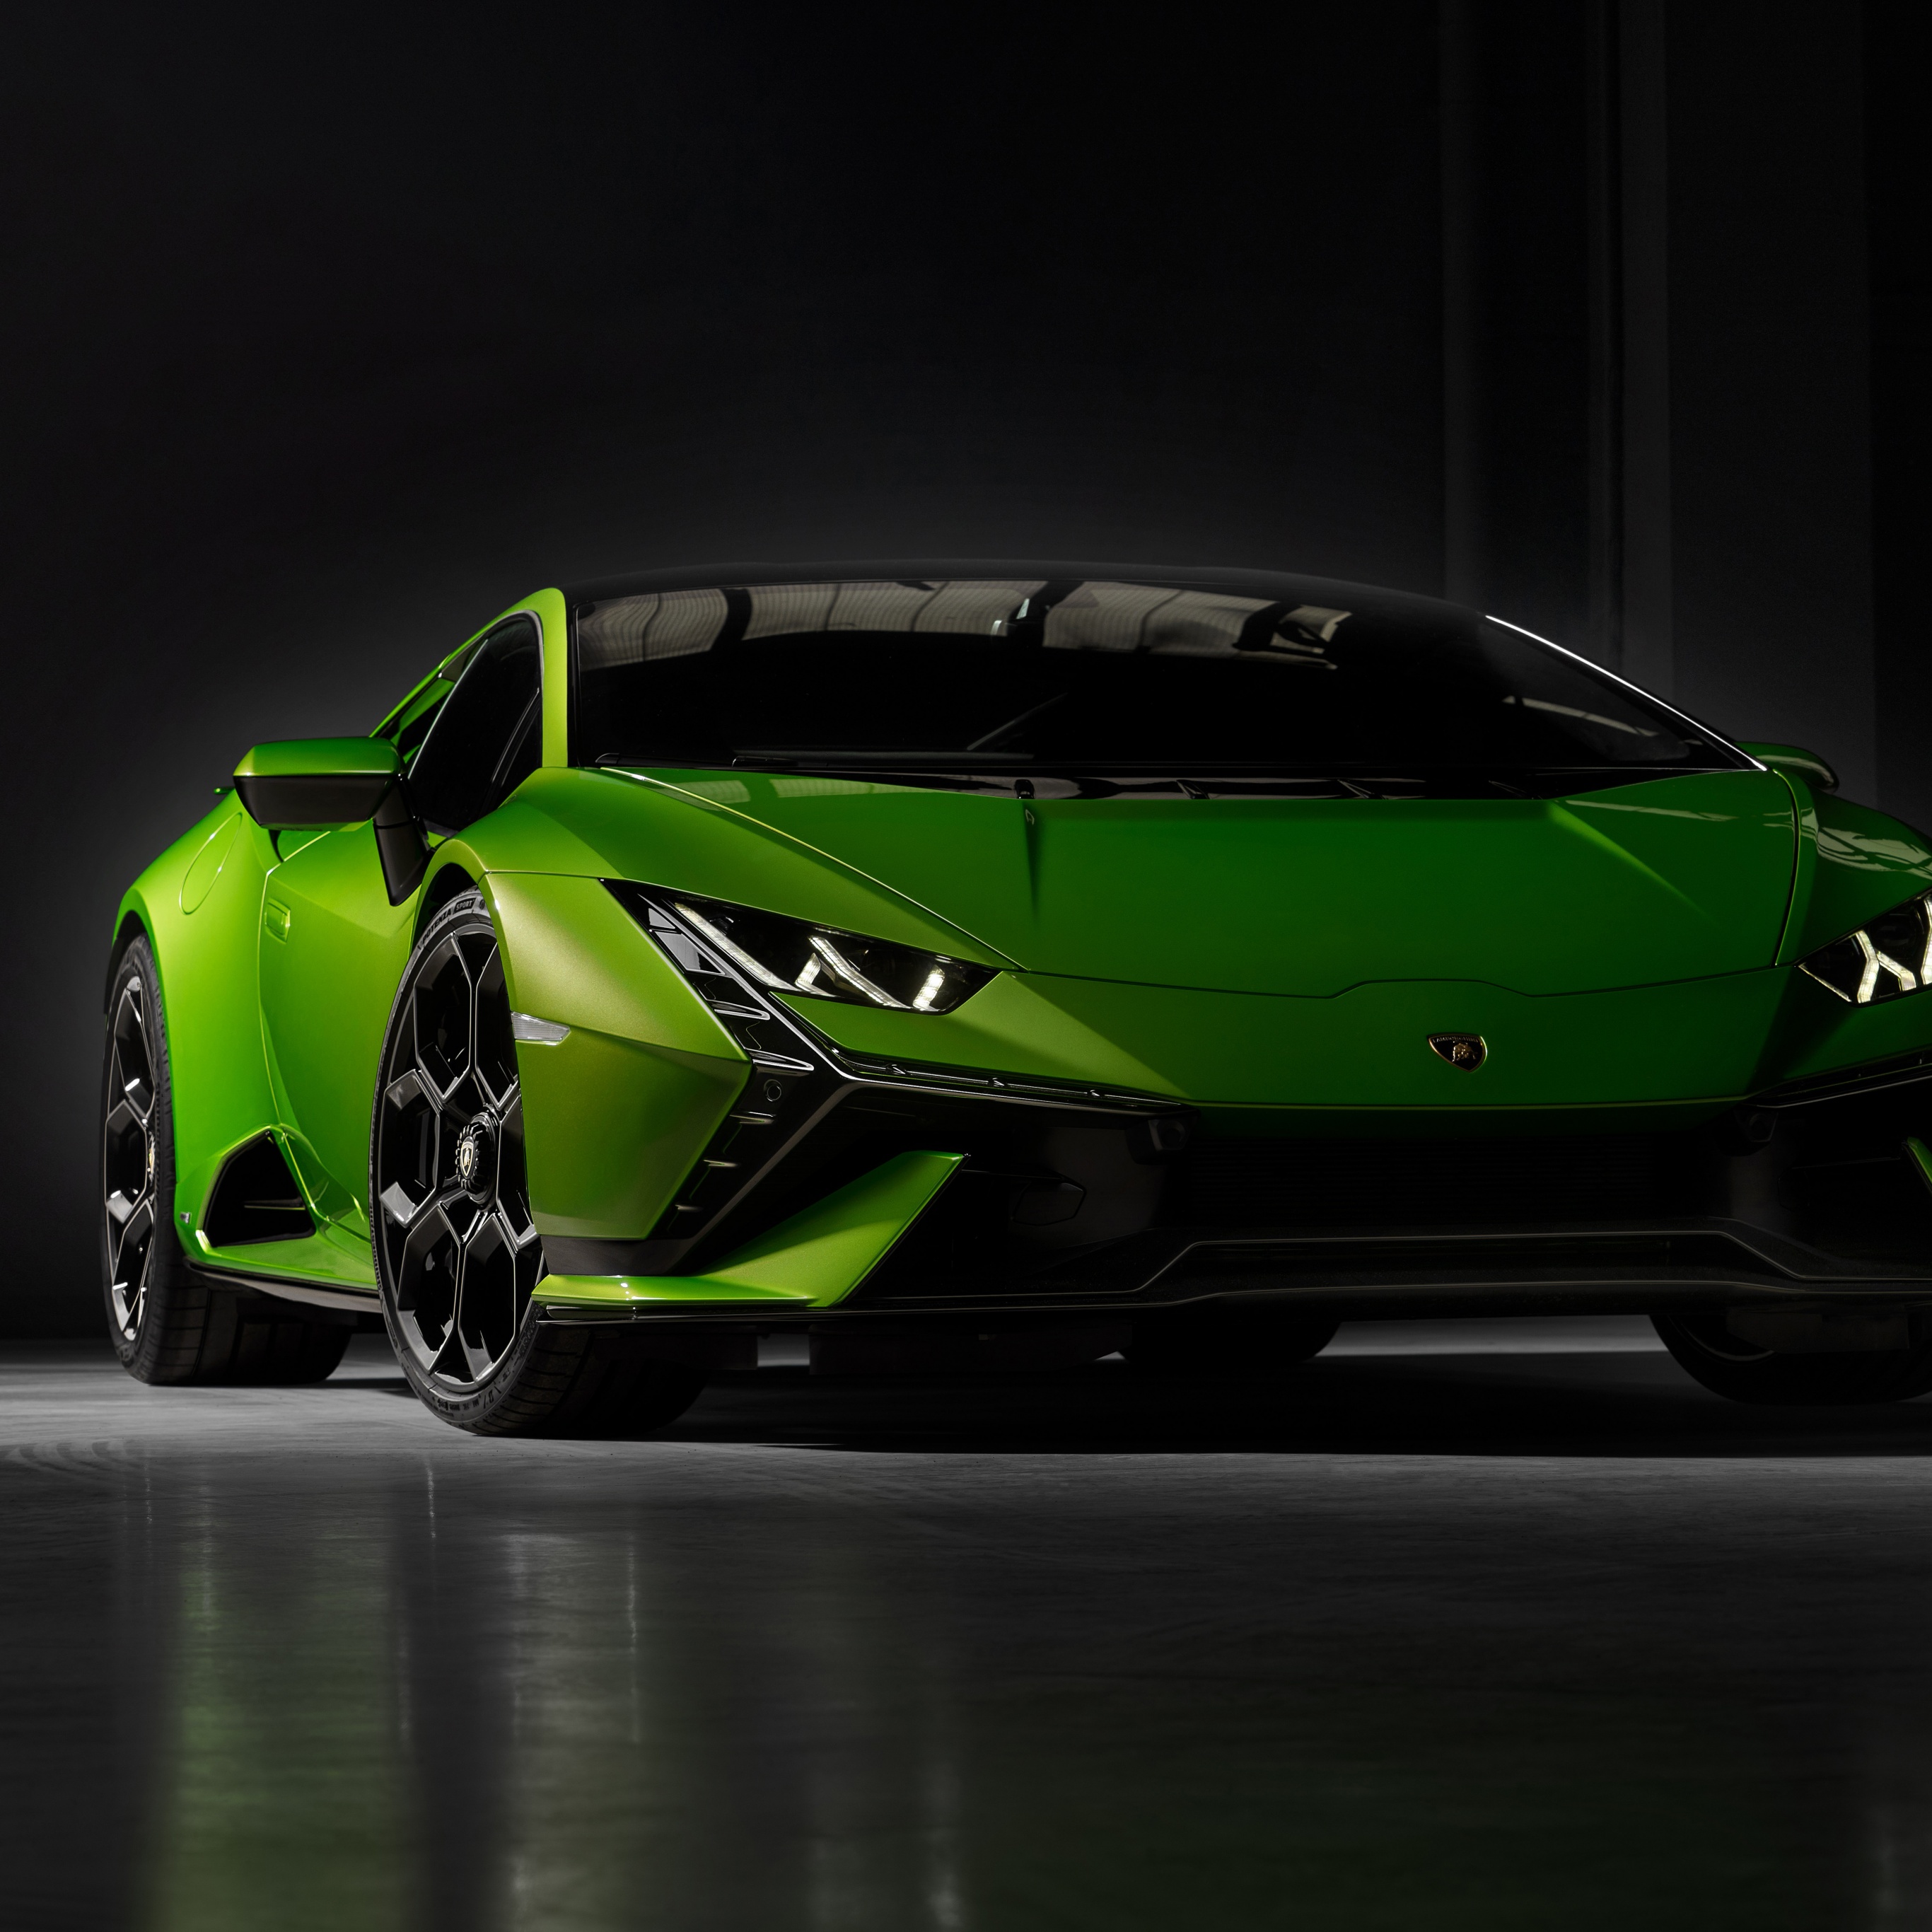 Hãy cùng chào đón siêu xe Lamborghini Huracán Tecnica 4K với hình nền chất lượng cao. Sự kết hợp của gam màu rực rỡ và thiết kế hiện đại, bạn sẽ cảm thấy như đang ngồi trên tay lái của chiếc siêu xe đẳng cấp này. Hãy tải xuống hình nền này để trở thành sự chú ý của tất cả mọi người.